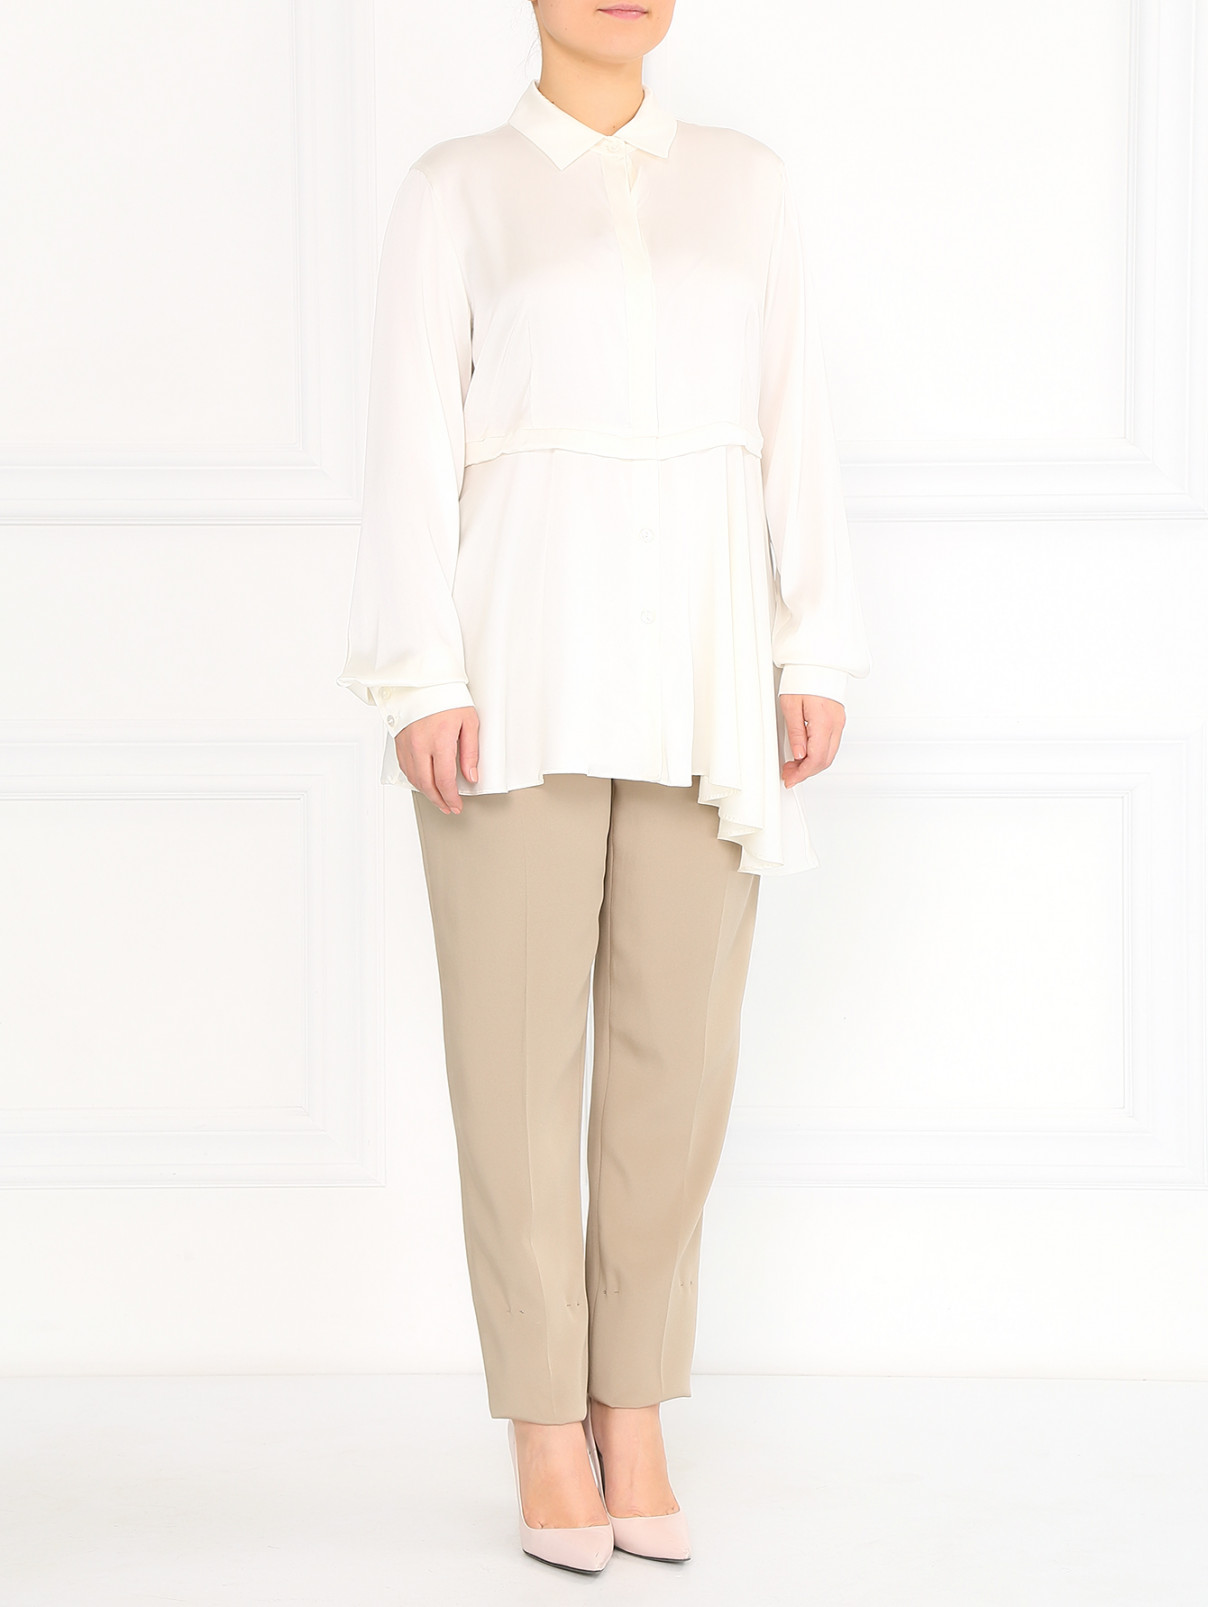 Шелковая блуза с длинным рукавом Marina Rinaldi  –  Модель Общий вид  – Цвет:  Бежевый